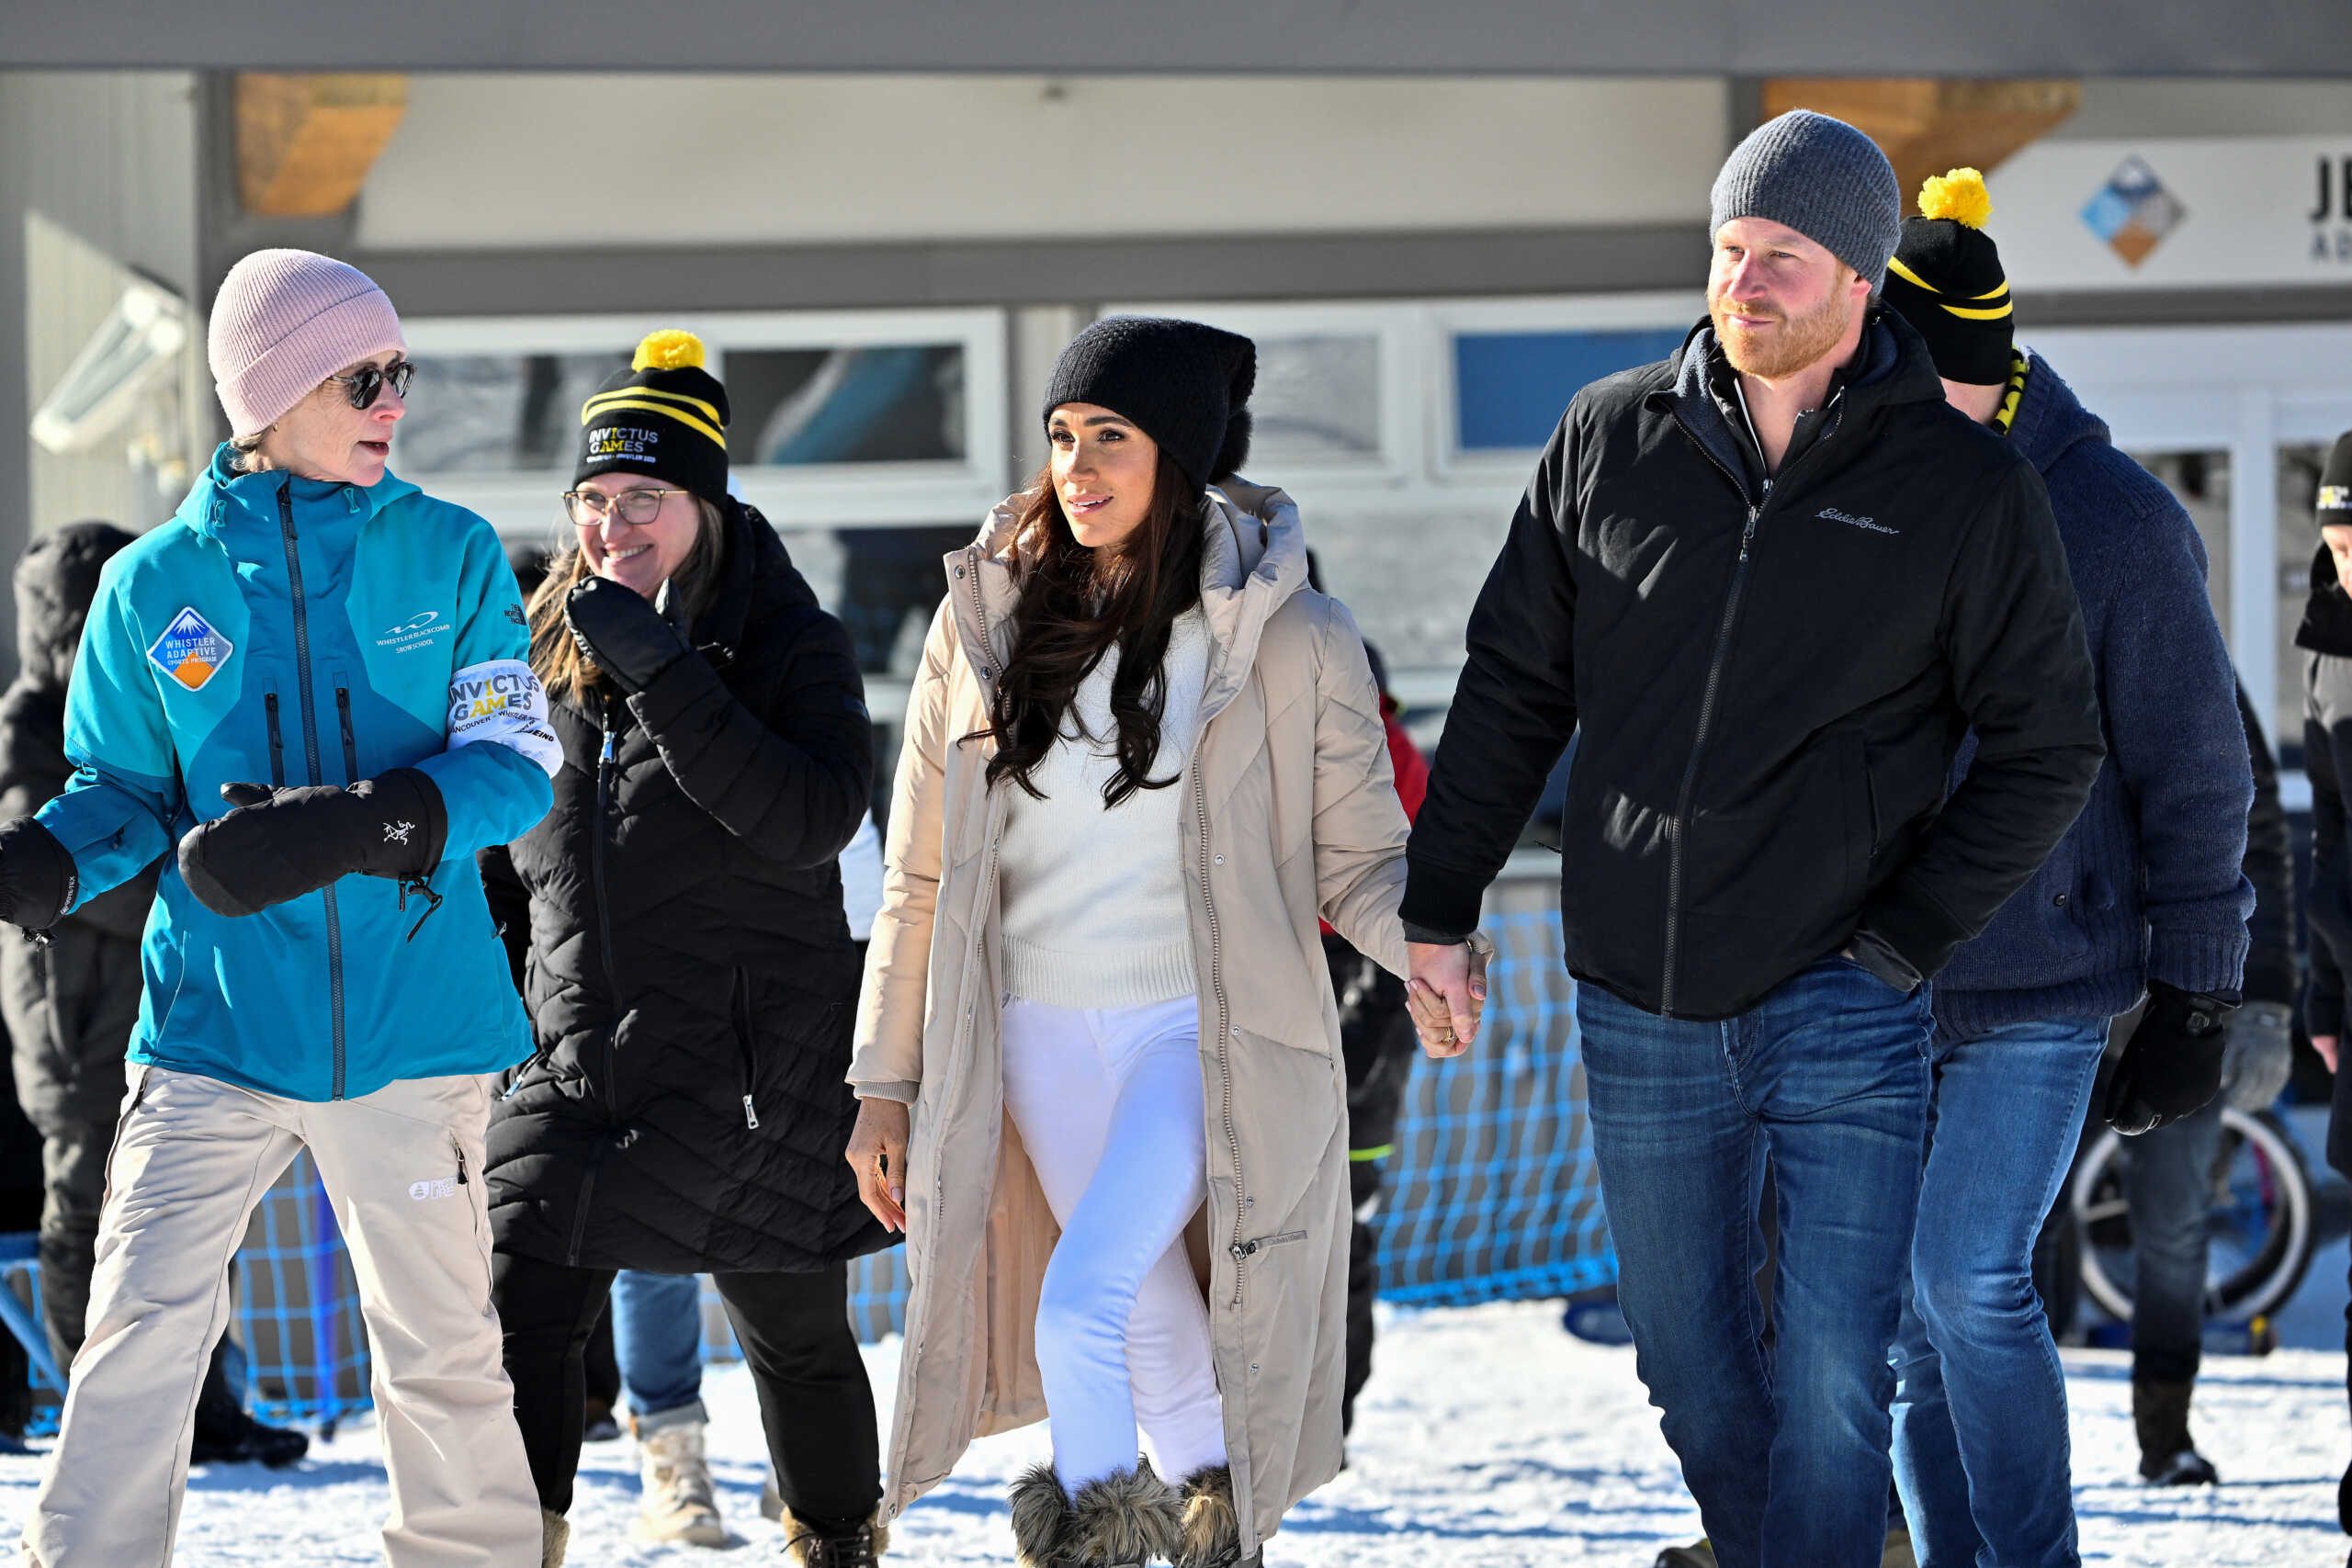 Χέρι-χέρι σε χιονοδρομικό κέντρο ο πρίγκιπας Χάρι και η Μέγκαν Μαρκλ την ημέρα των ερωτευμένων